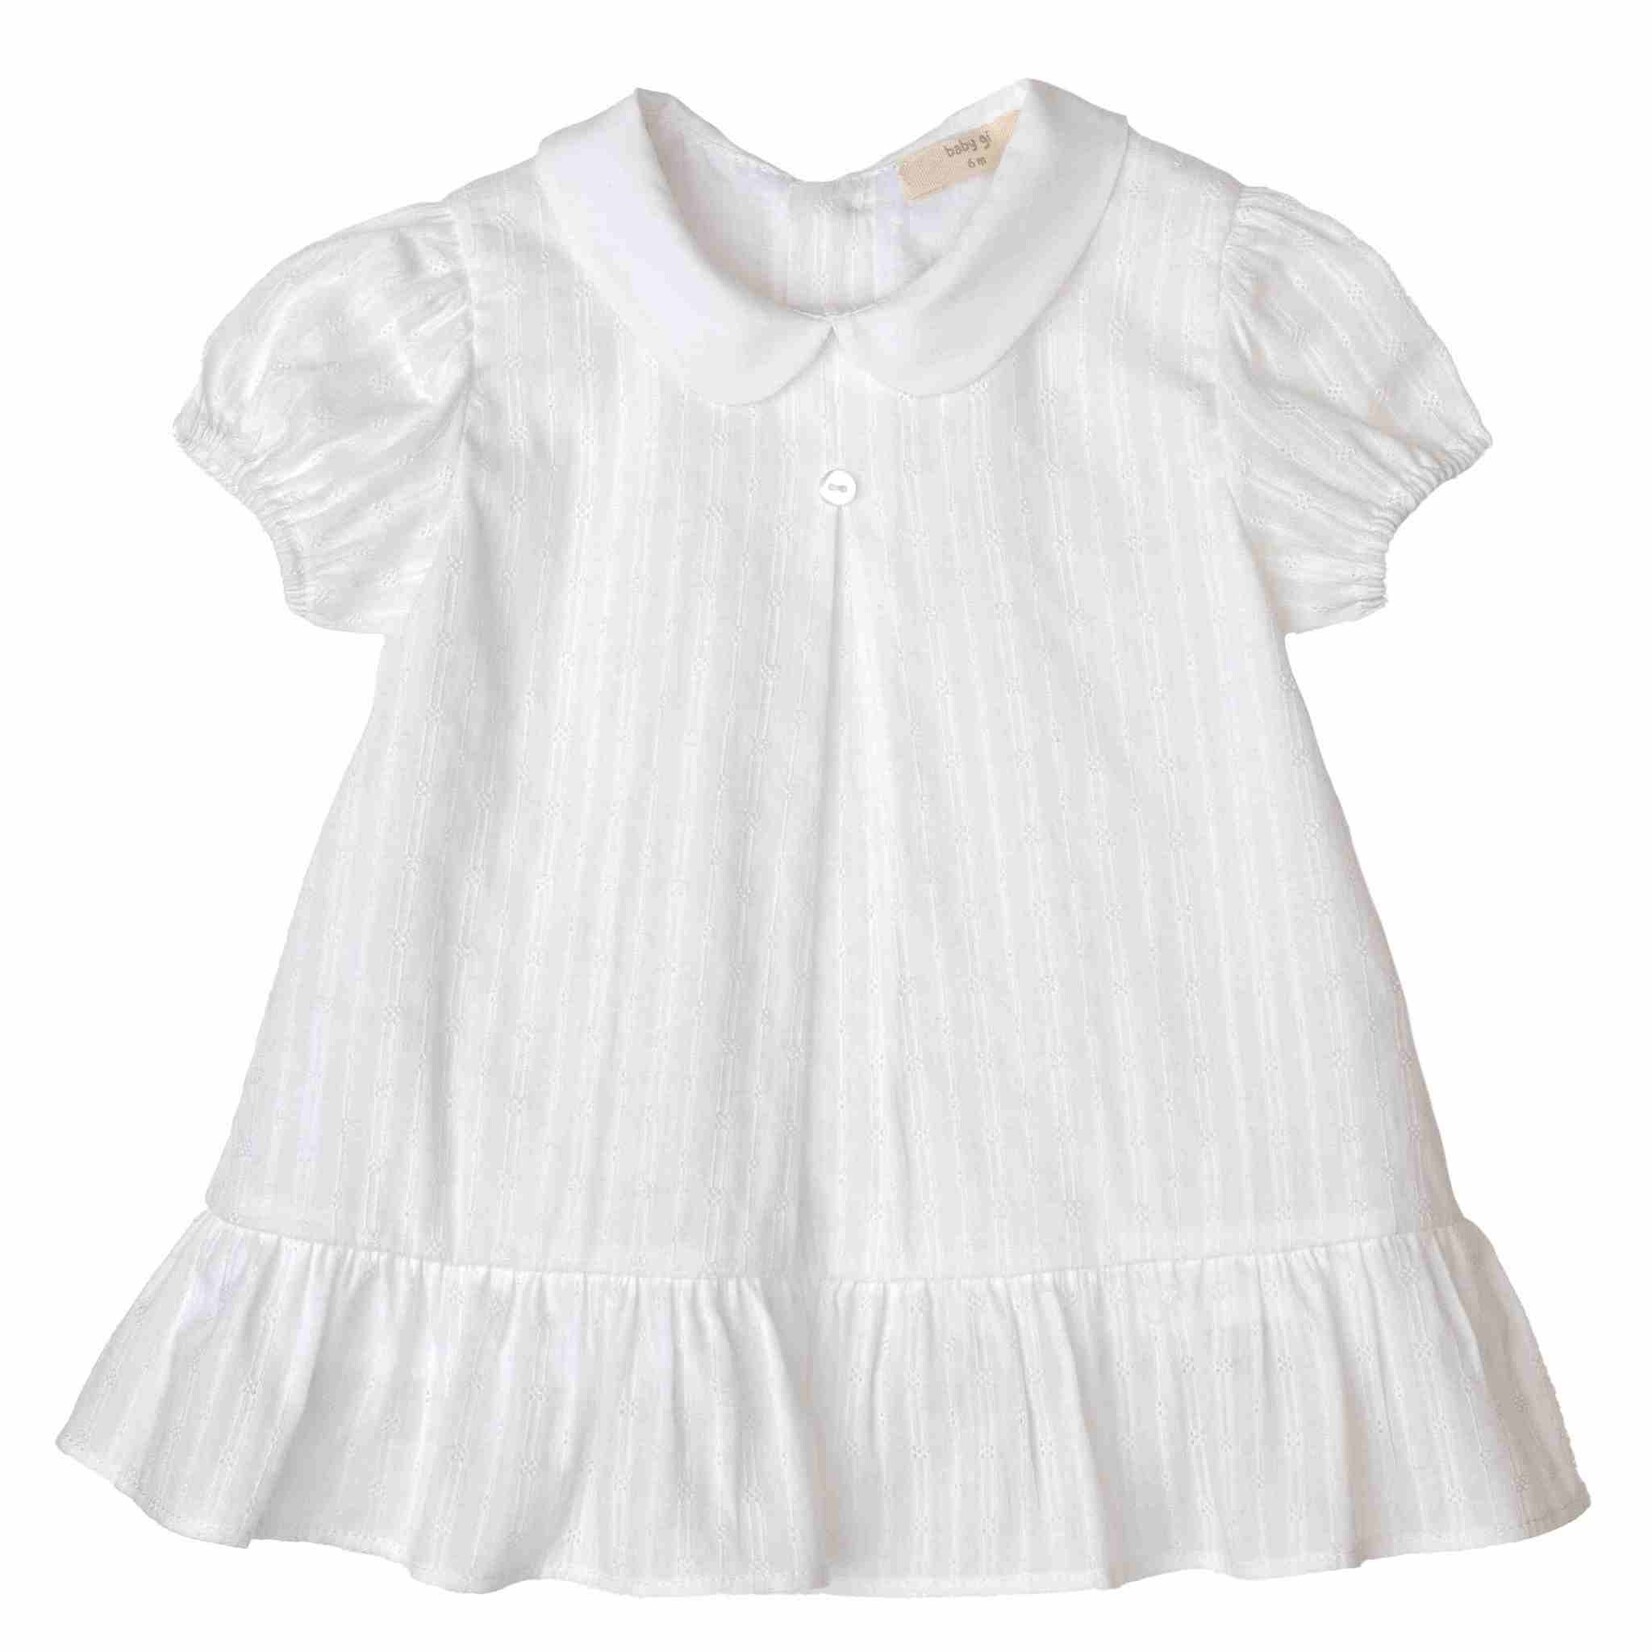 Baby Gi Baby Gi - Ivory jurk met broekje - pure